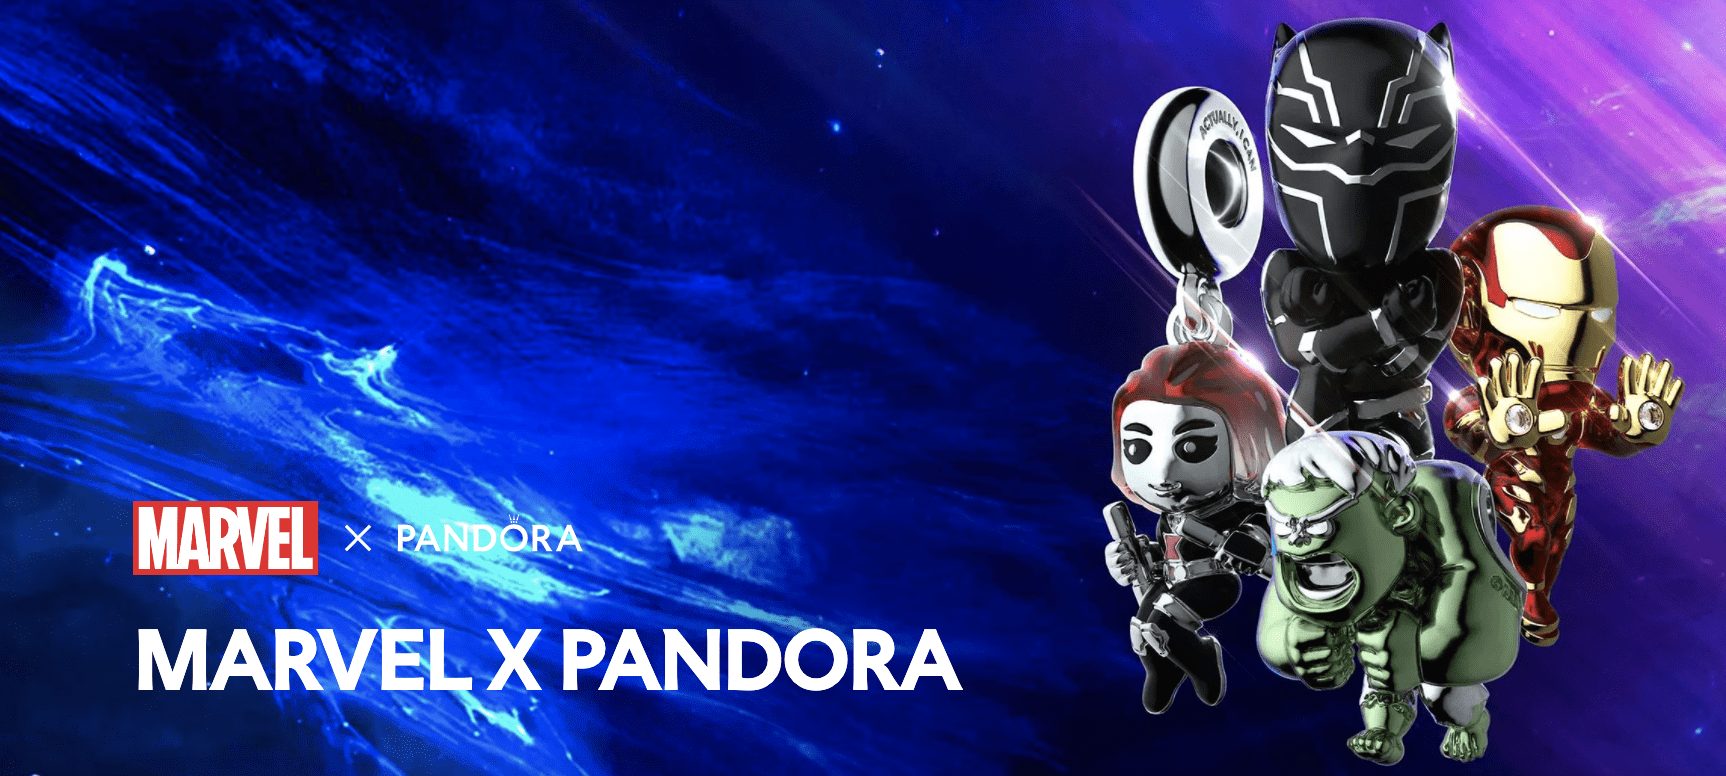 Marvel x Pandora 